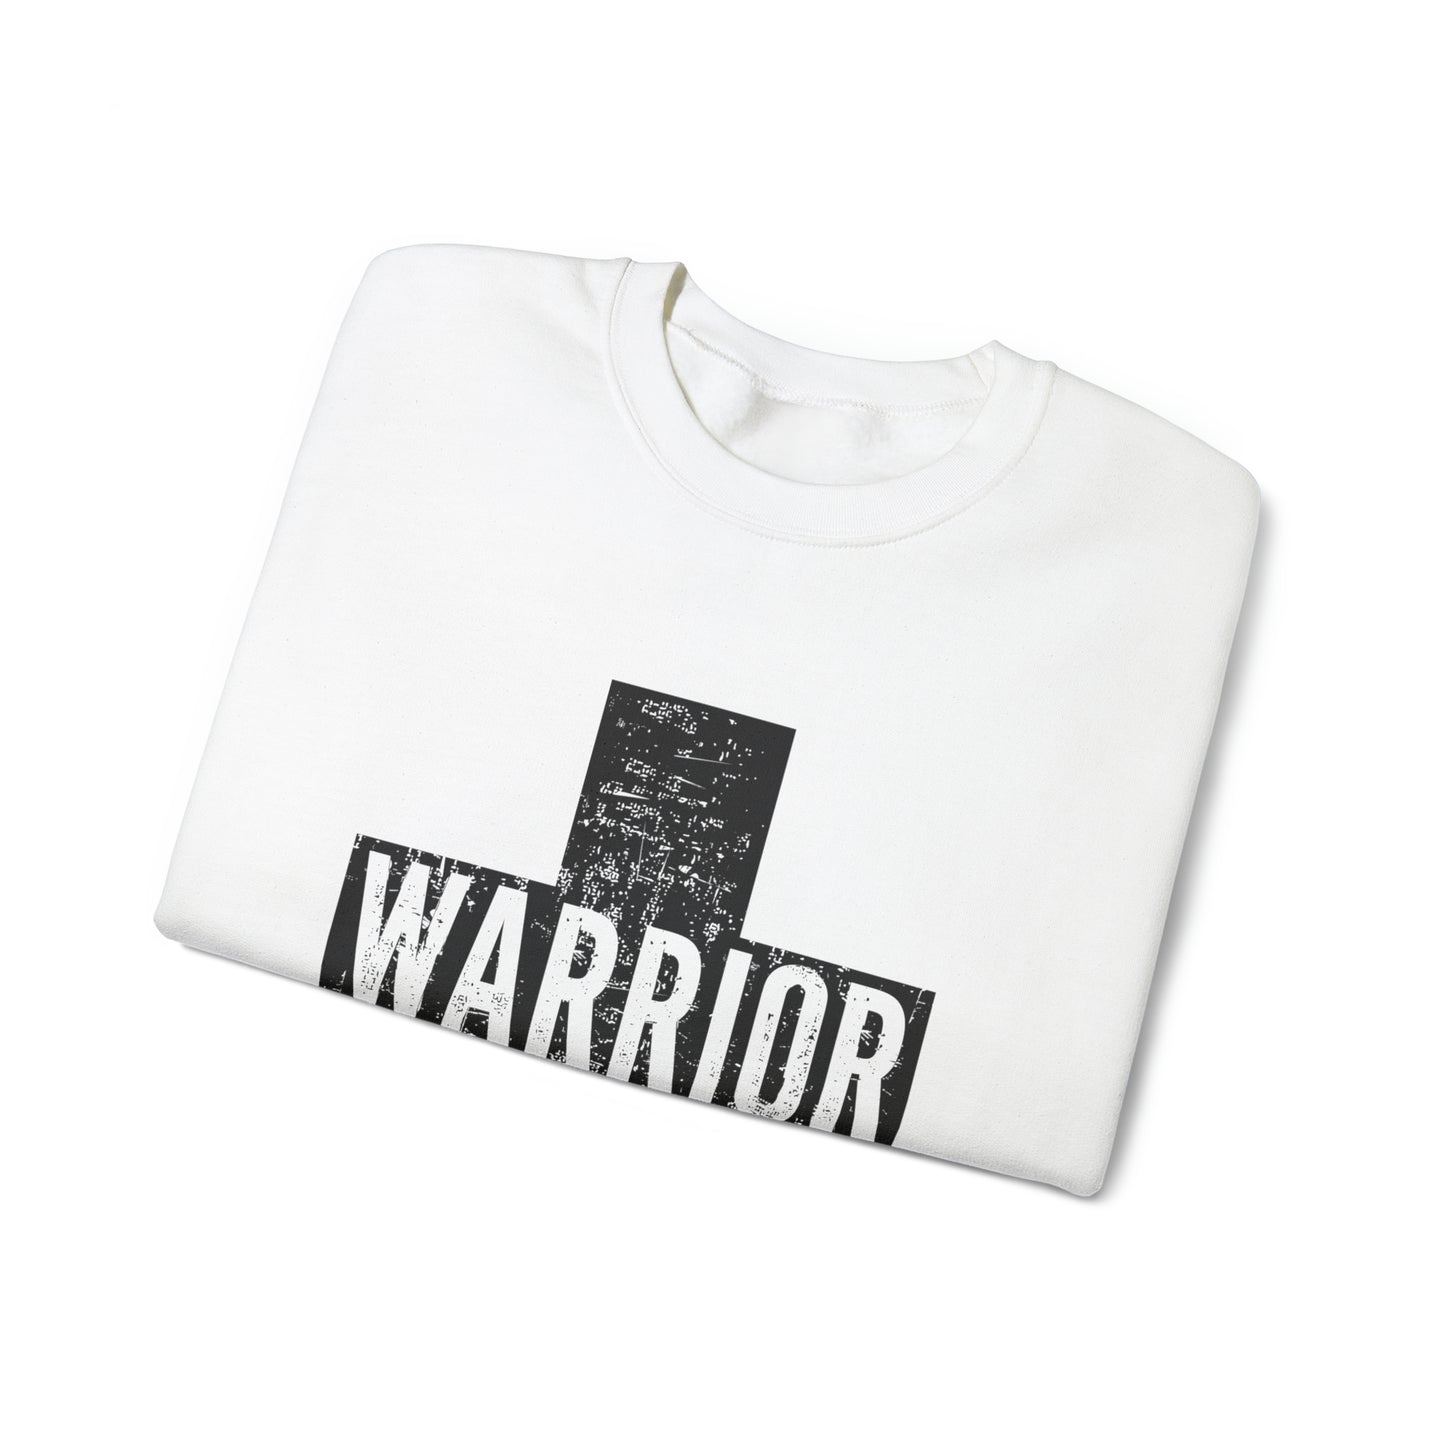 Warrior Cross Sweatshirt